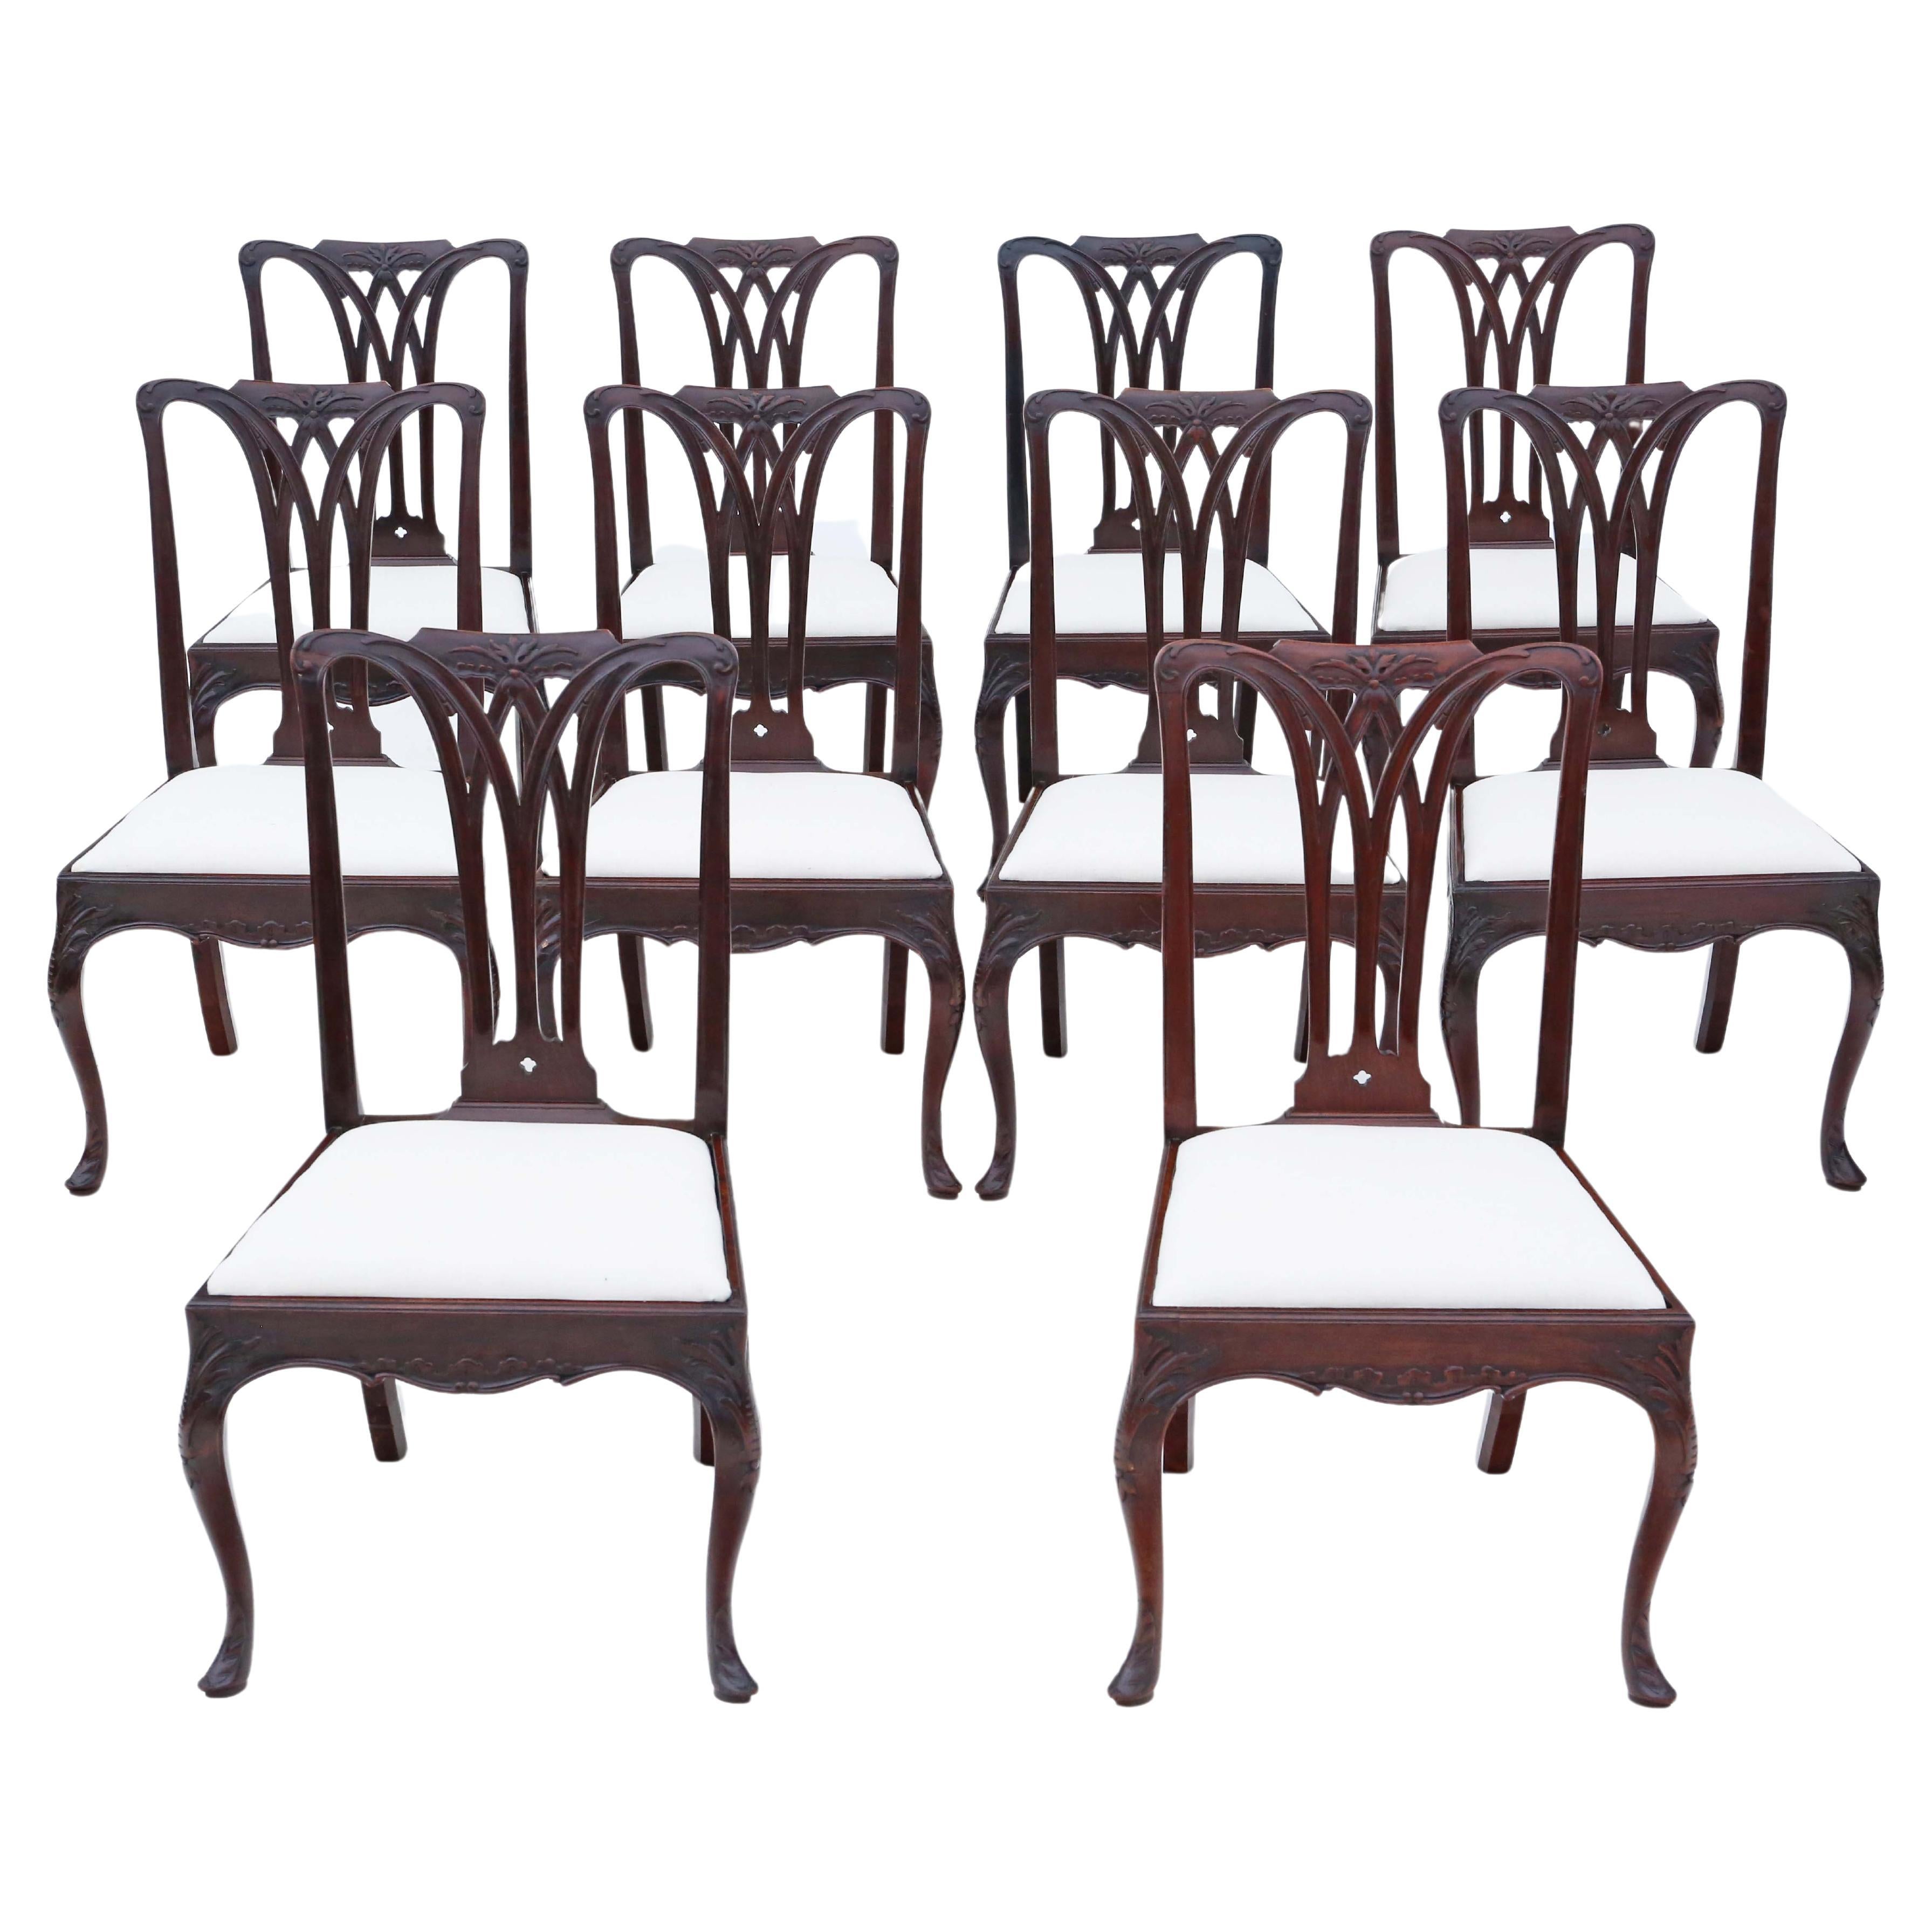 Antike georgianische Mahagoni-Esszimmerstühle aus dem 18. Jahrhundert: 10er-Set, hohe Qualität